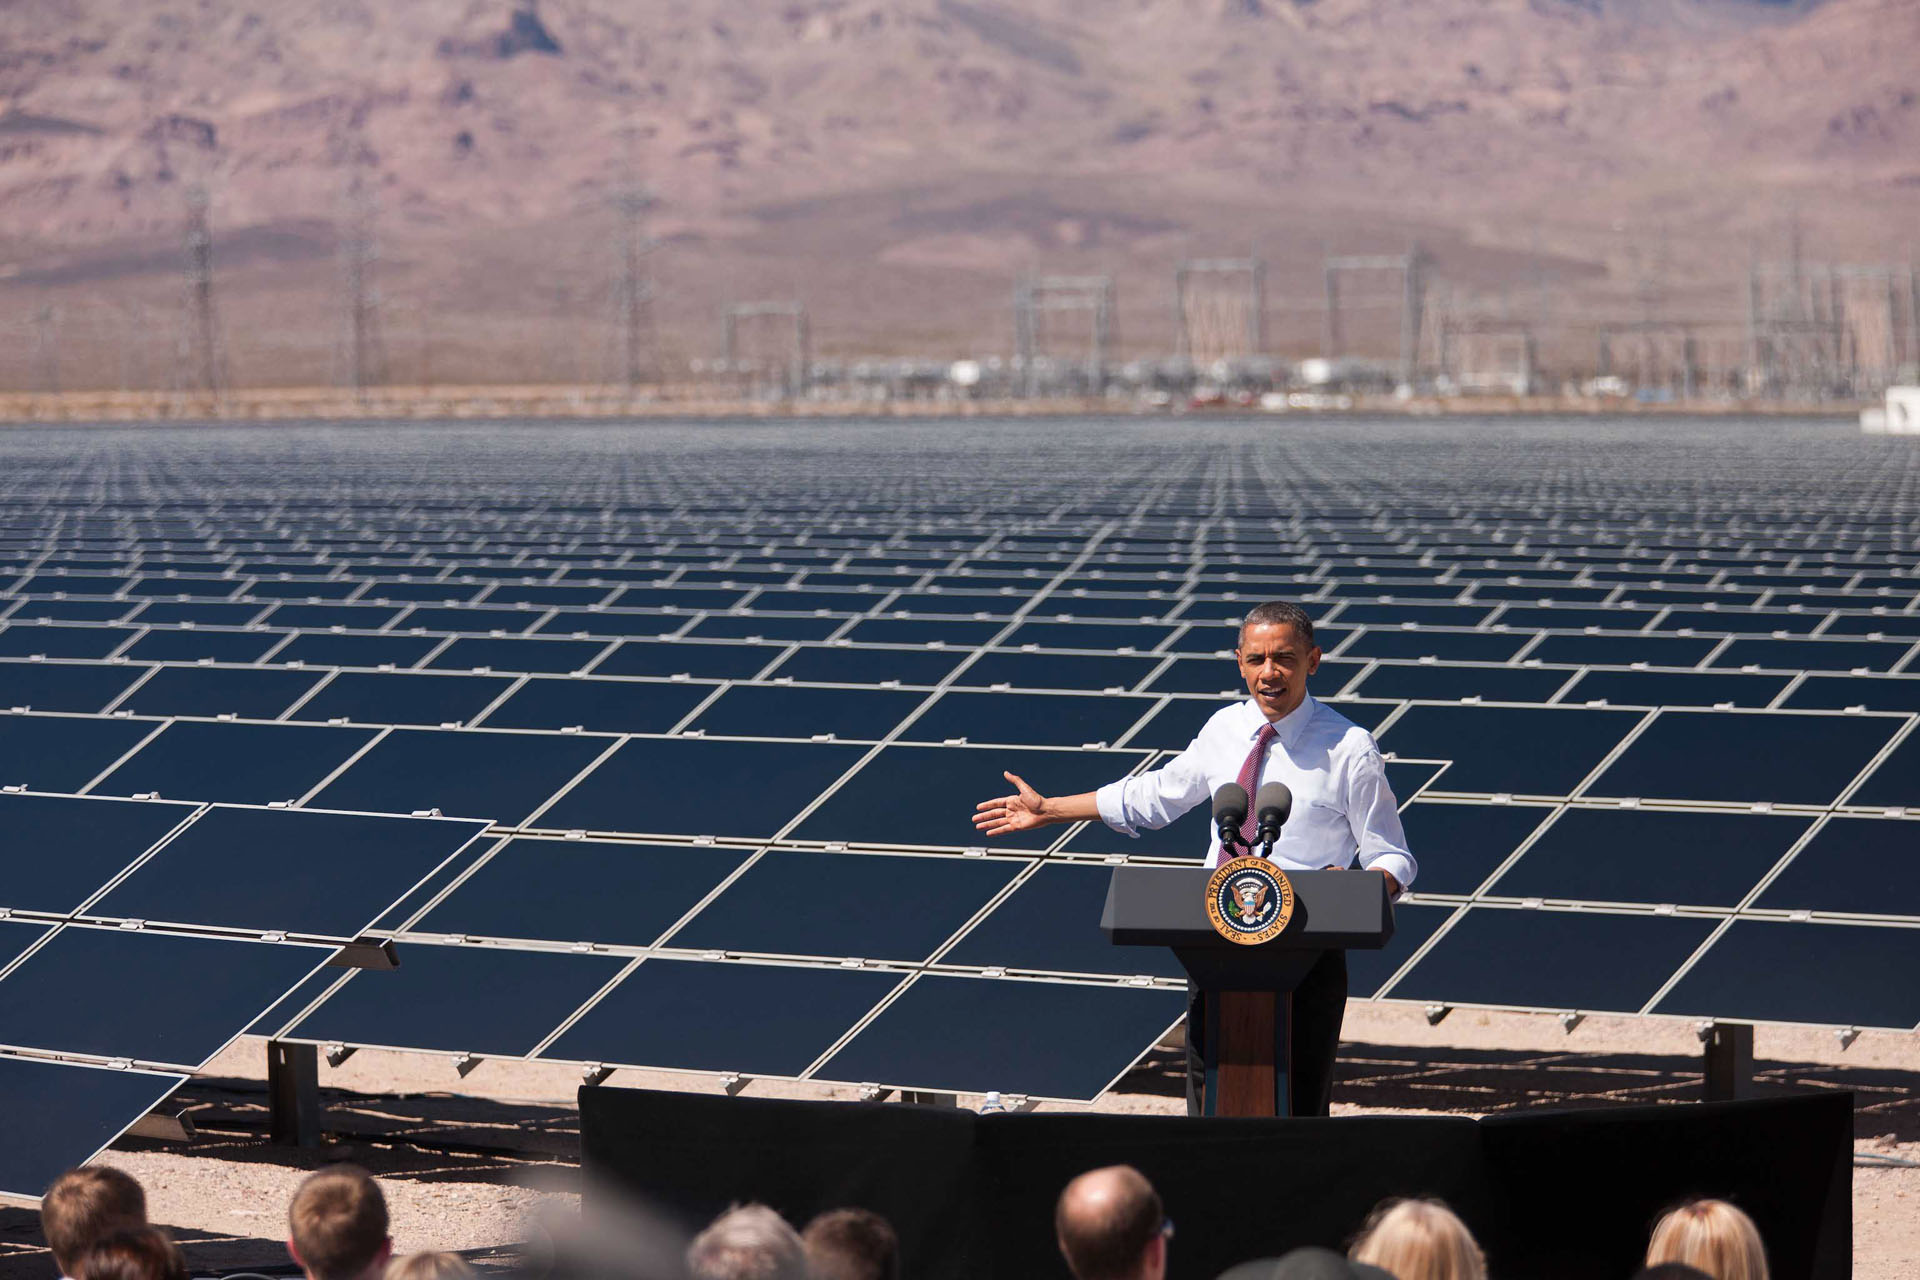 President Barack Obama speaking at a solar energy farm